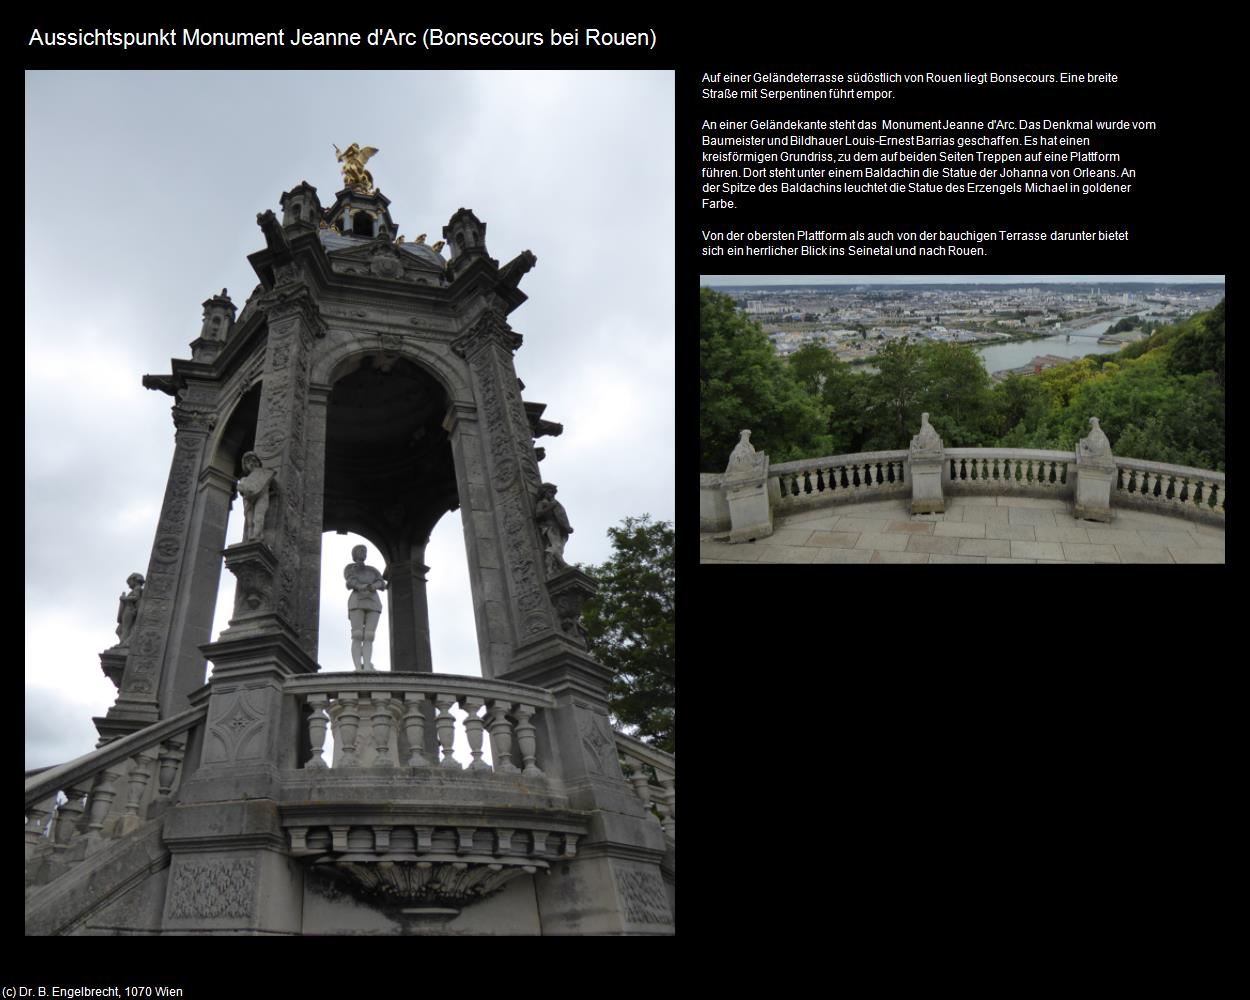 Aussichtspunkt Monument Jeanne d'Arc (Bonsecours bei Rouen (FR-NOR)) in Kulturatlas-FRANKREICH